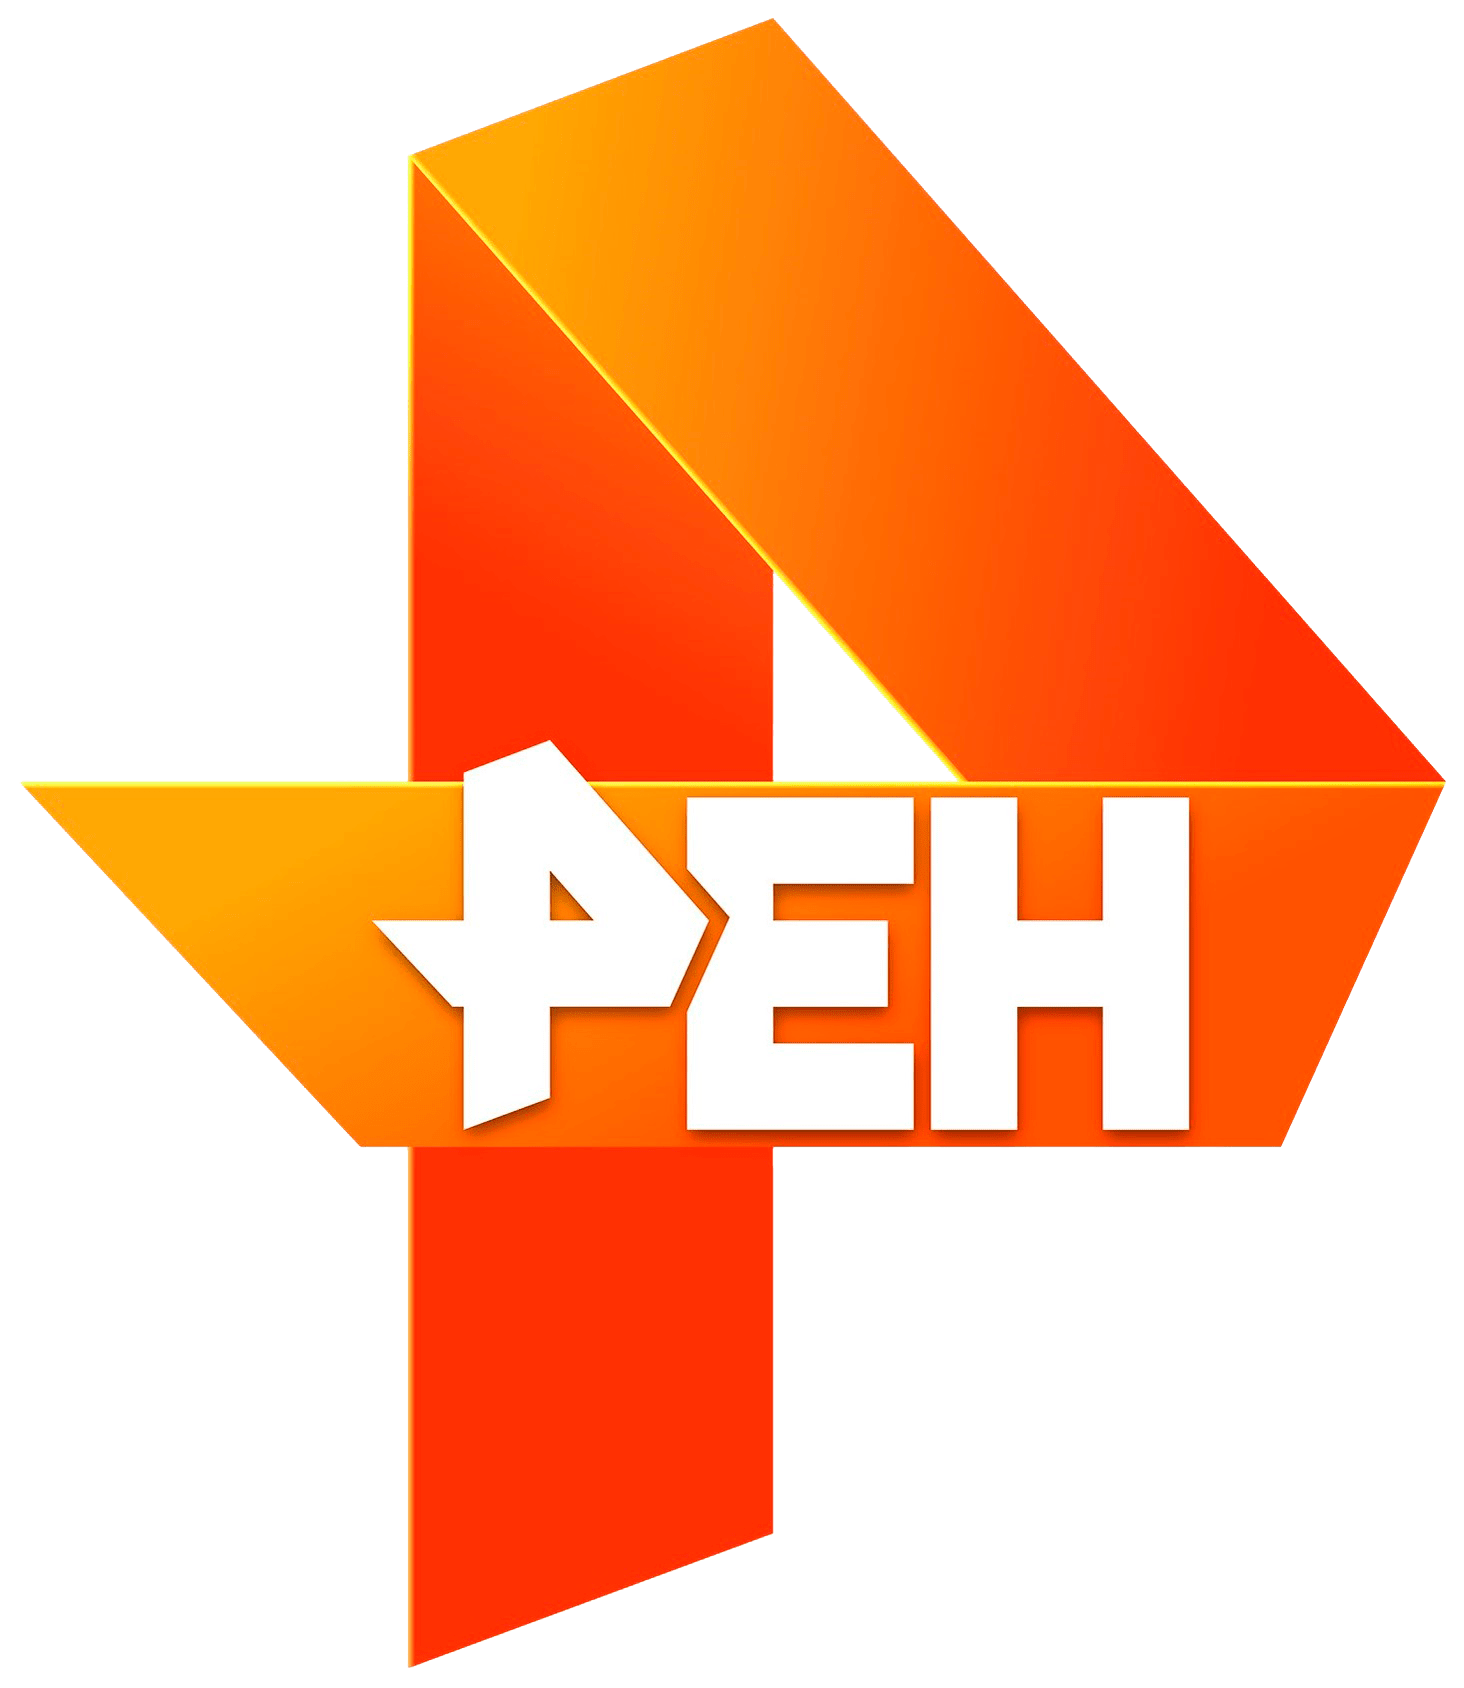 Раземщение рекламы РЕН ТВ, г. Ижевск